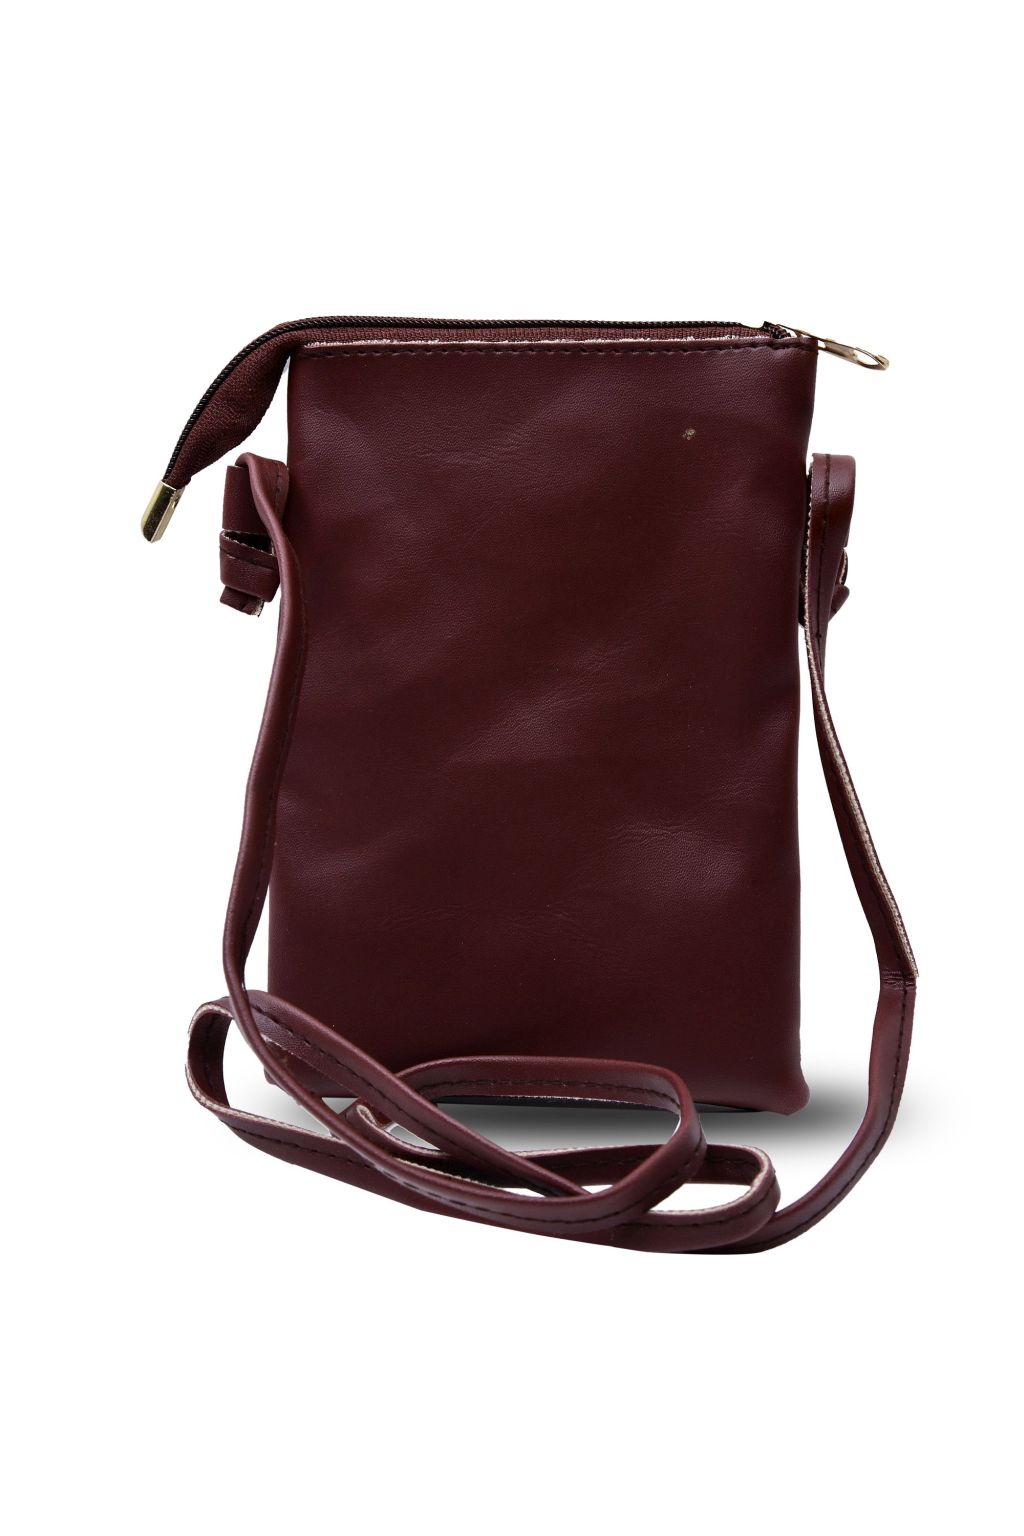 Brown Sling Bag With Tassel Deatil | LRBCZBR001 | Cilory.com